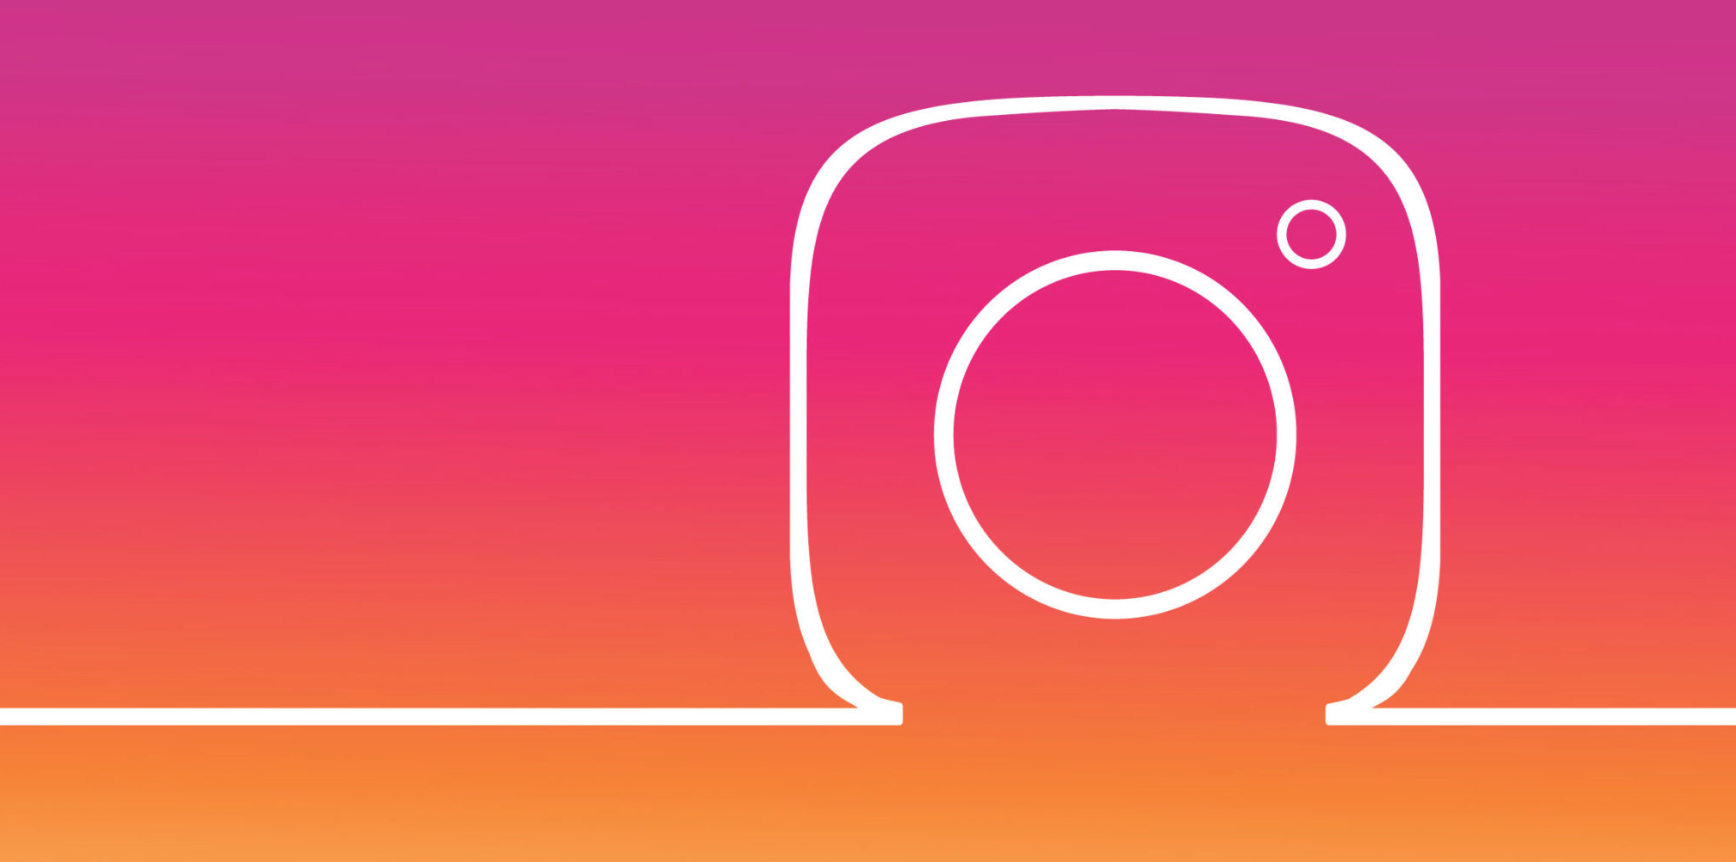 Instagram API műsorváltozás? – a SentiOne válaszol